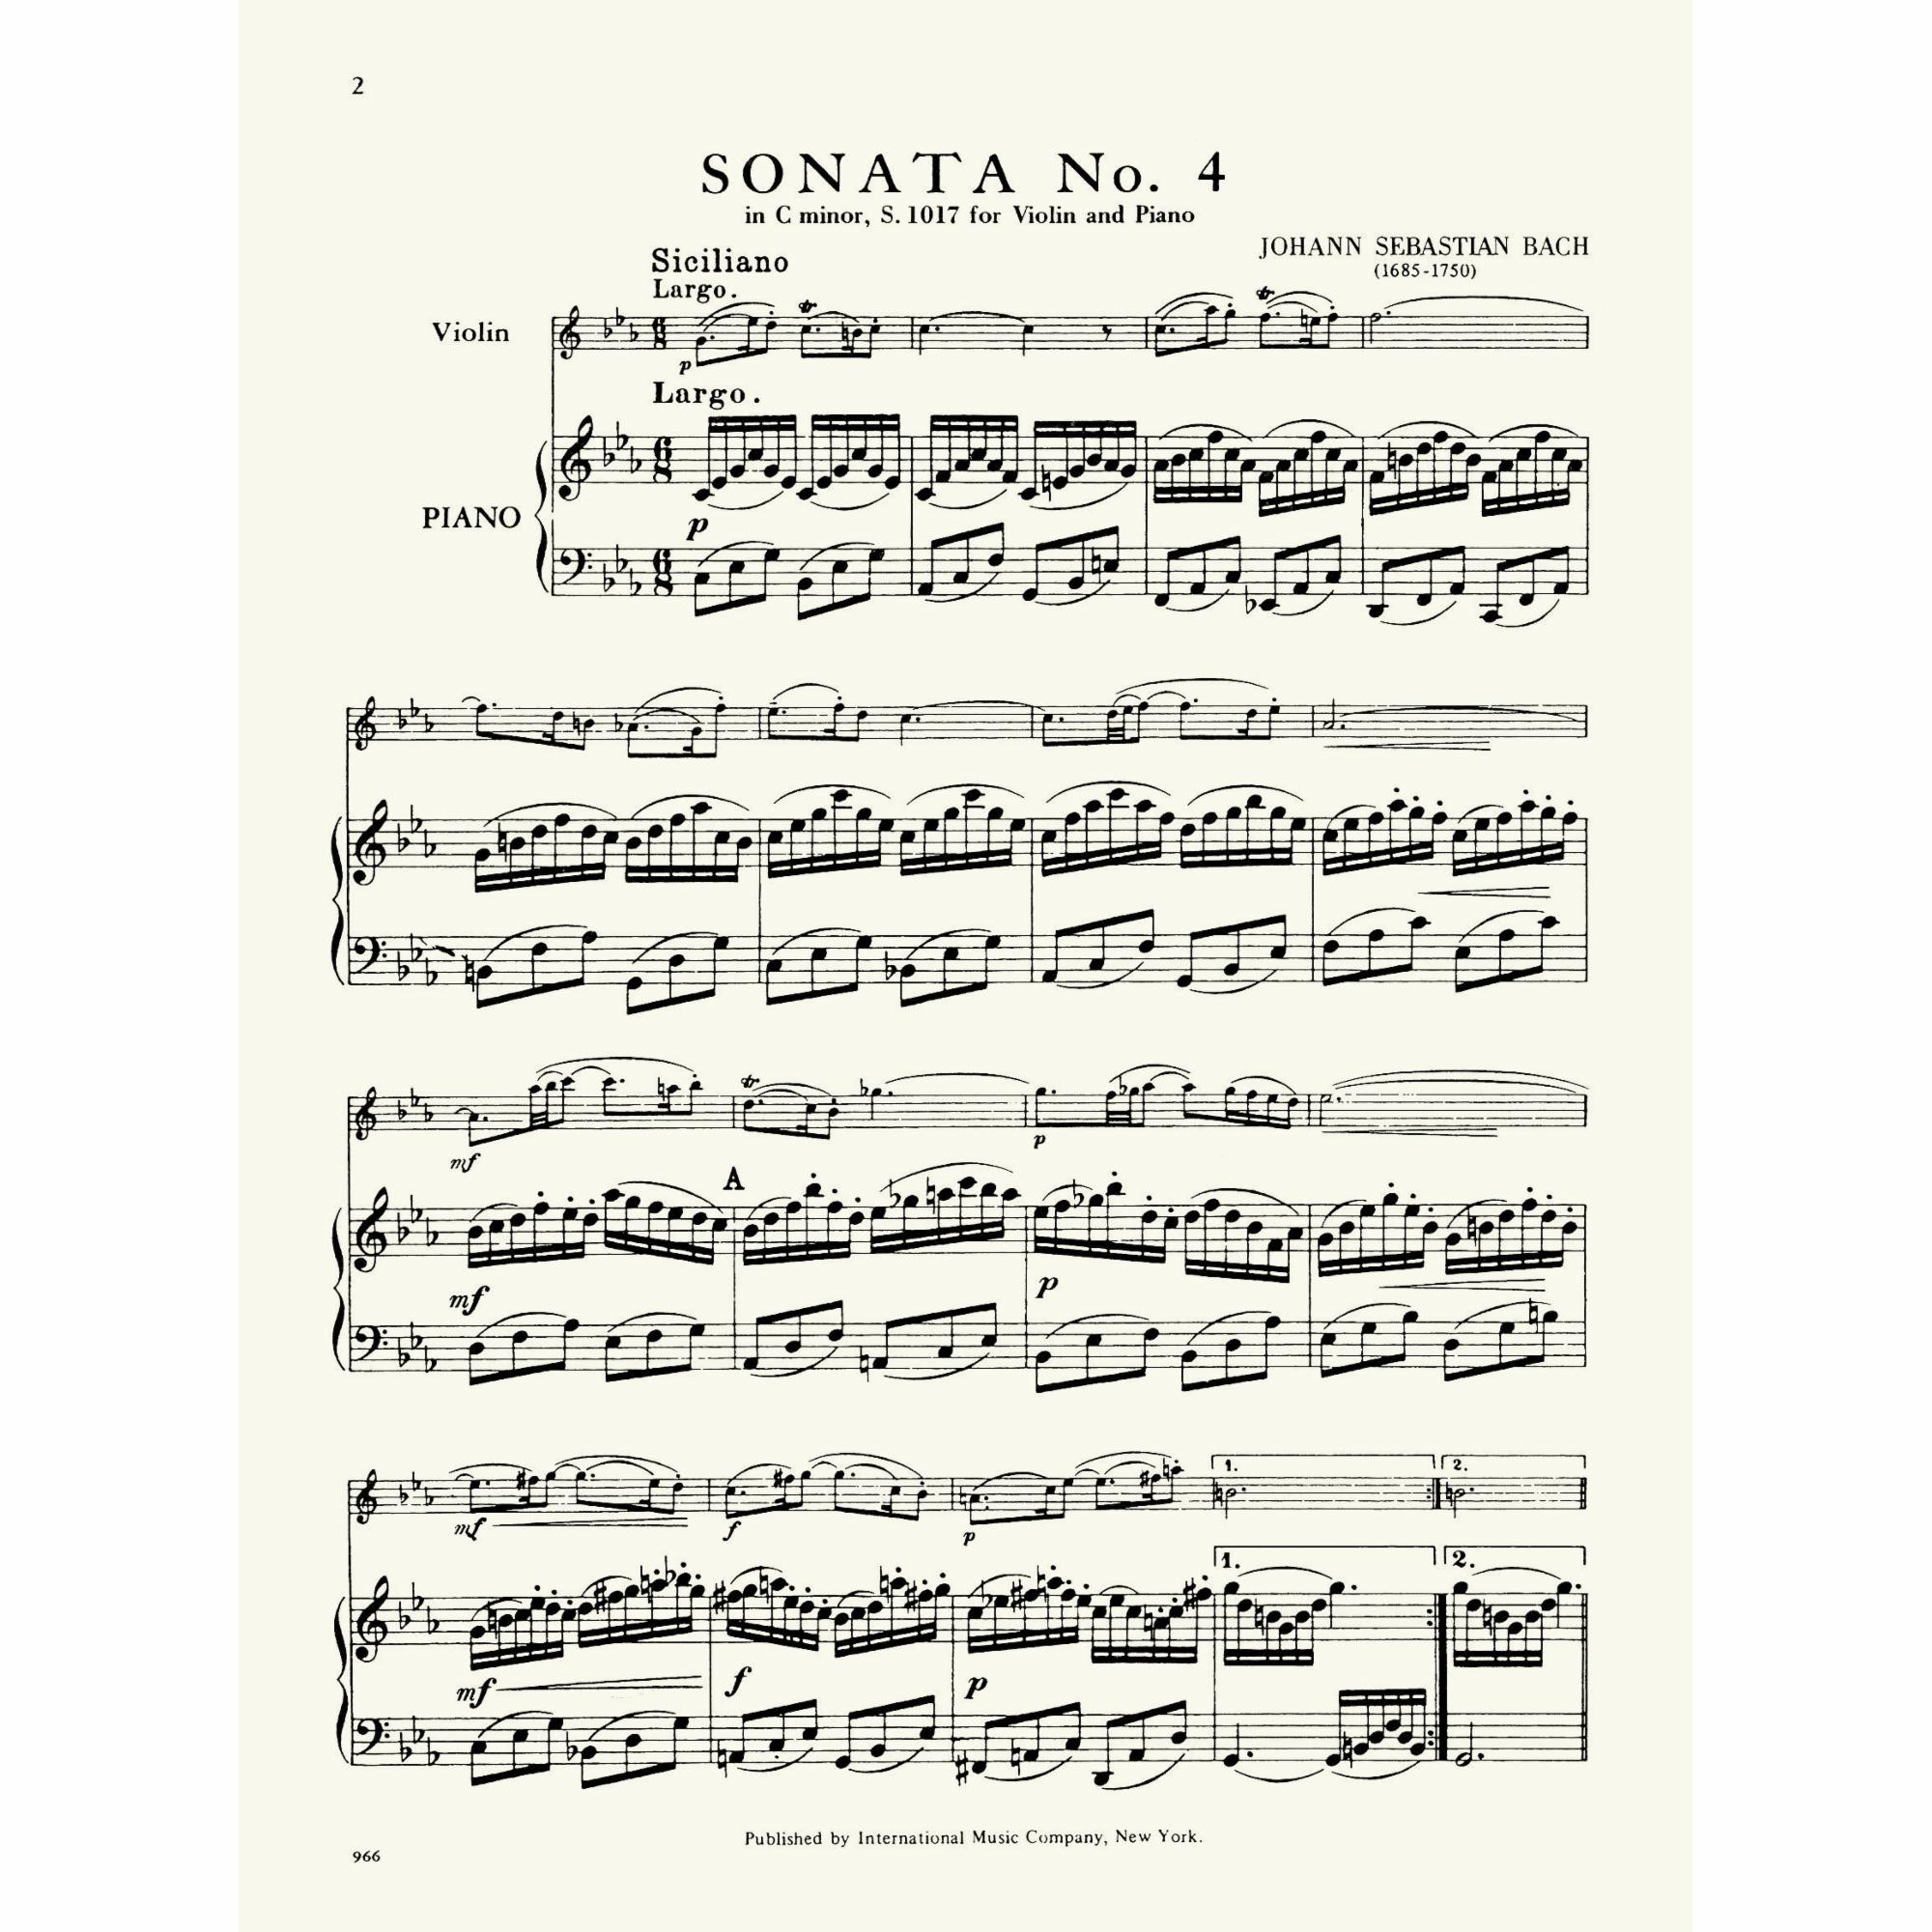 Sample: Vol. II, Piano (Pg. 2)